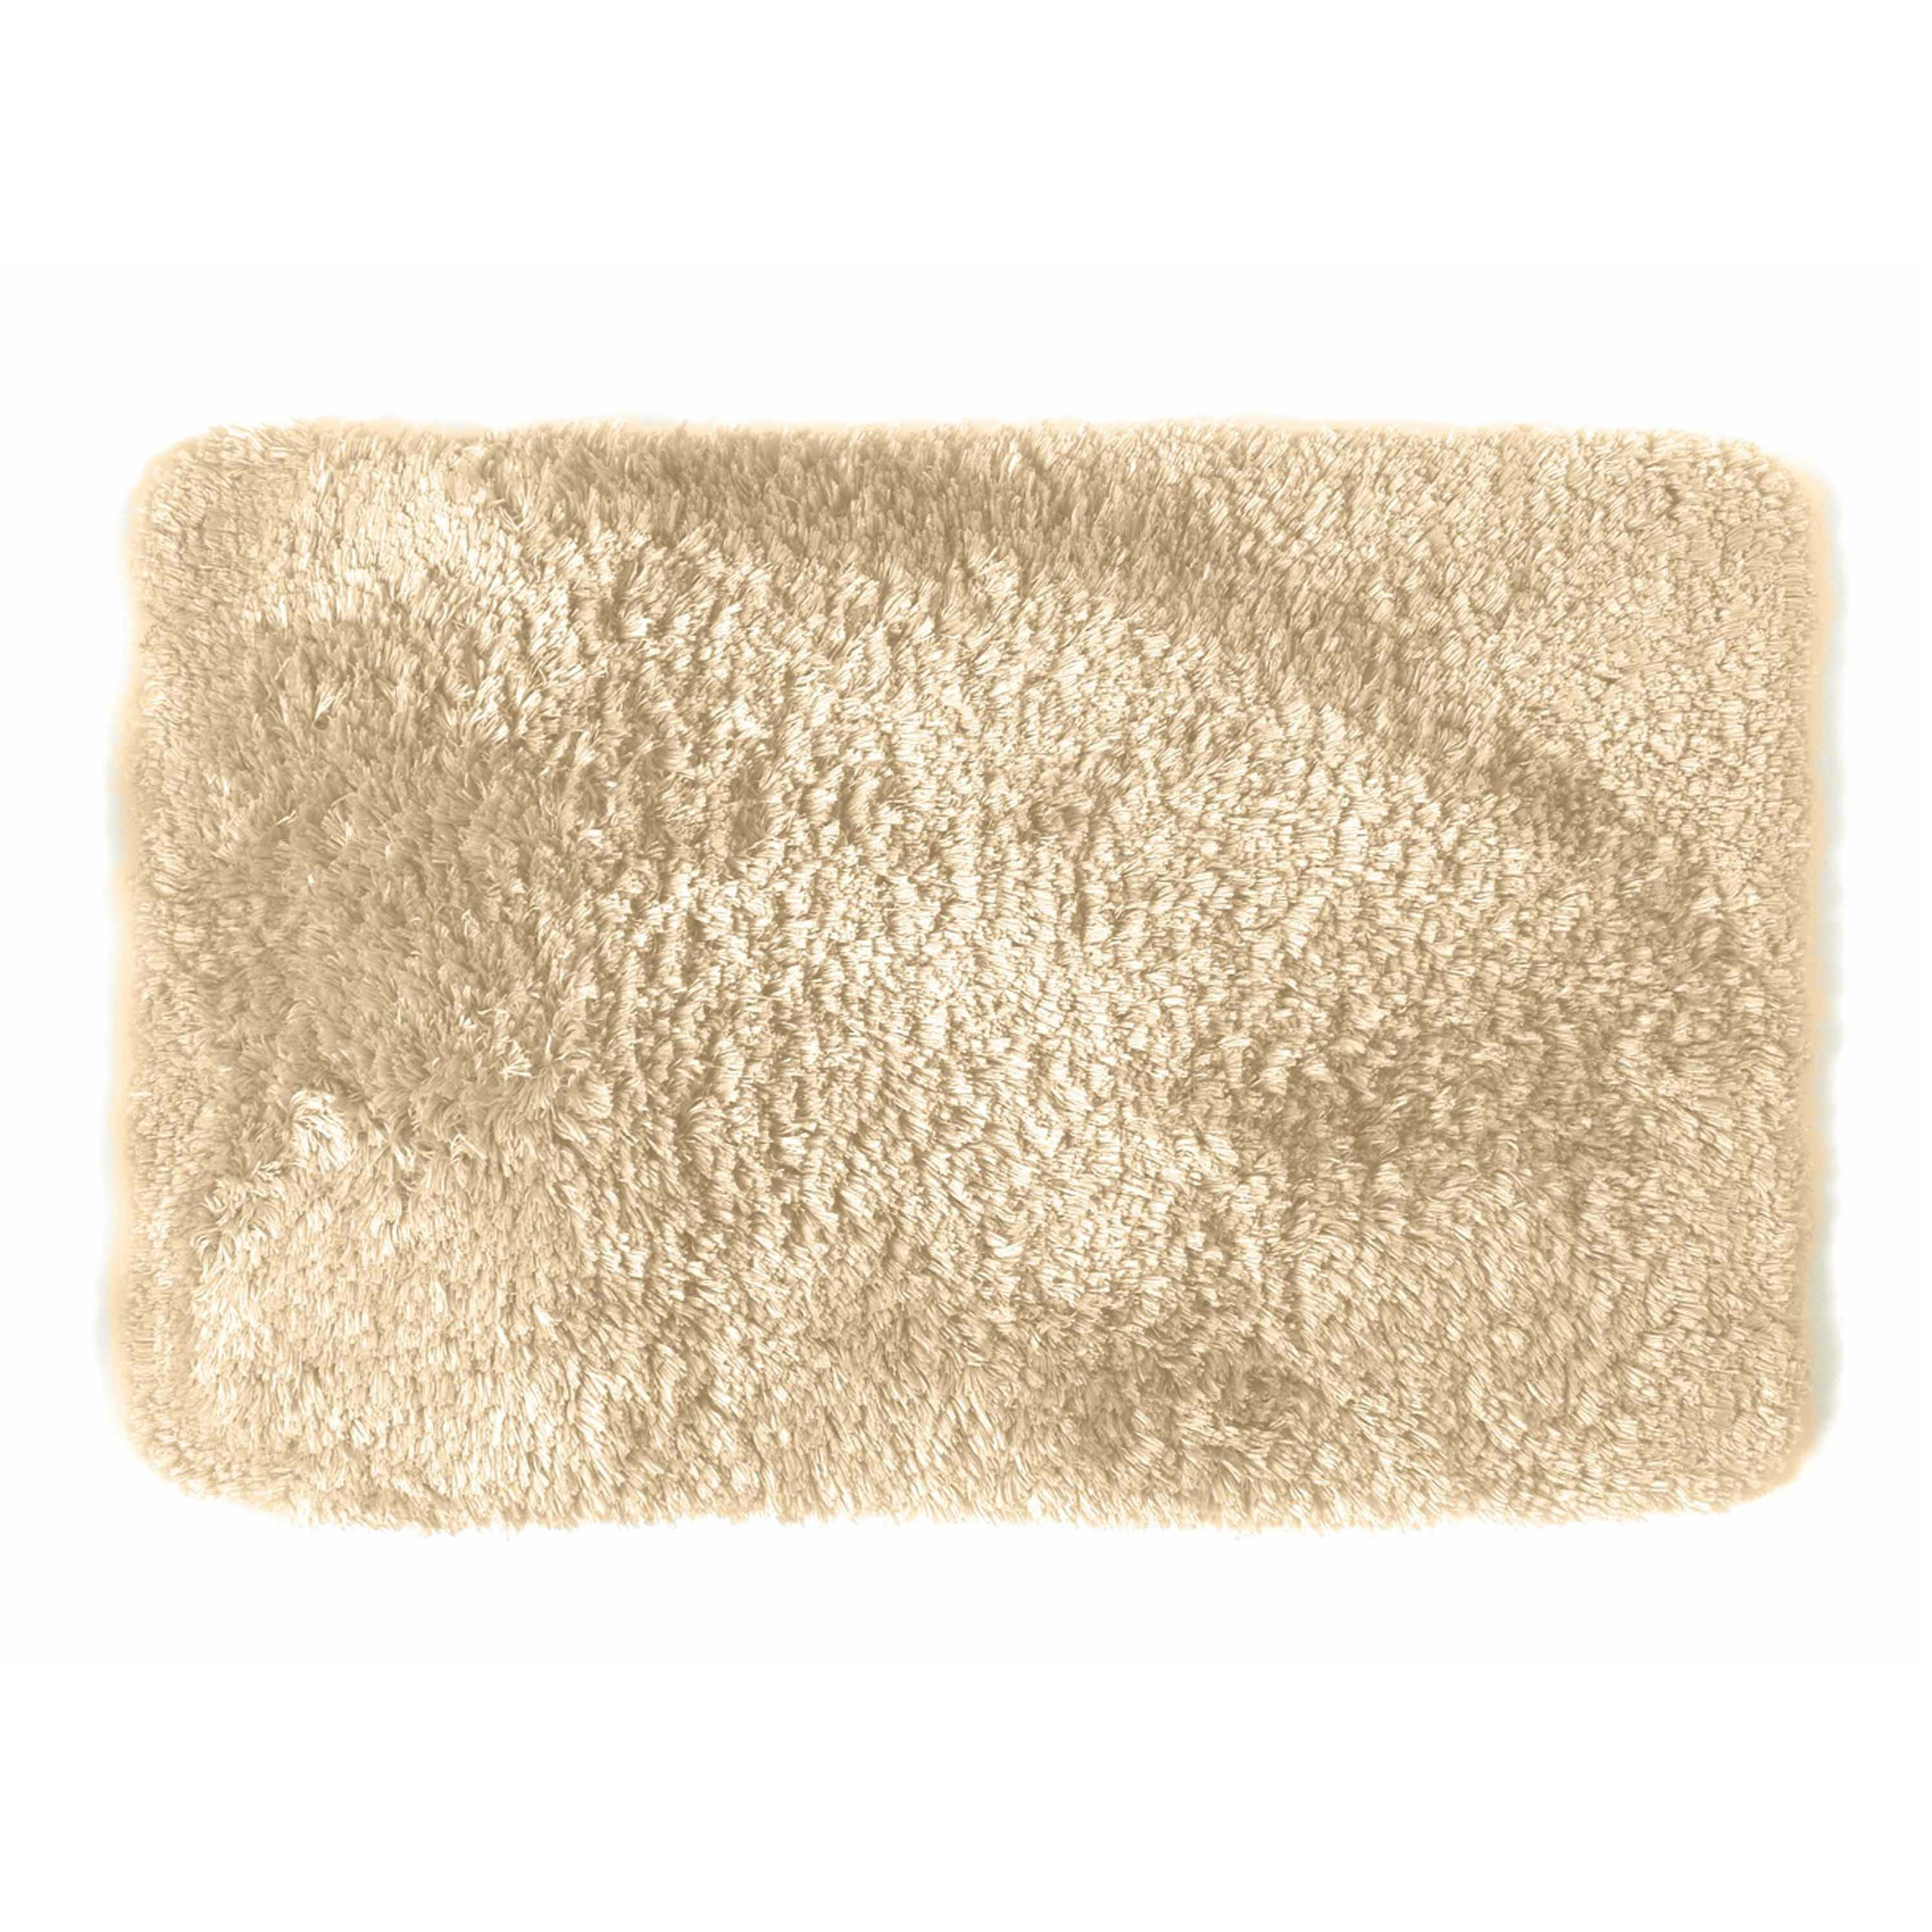 Spirella badkamer vloer kleedje-badmat tapijt hoogpolig en luxe uitvoering beige 40 x 60 cm Microfib